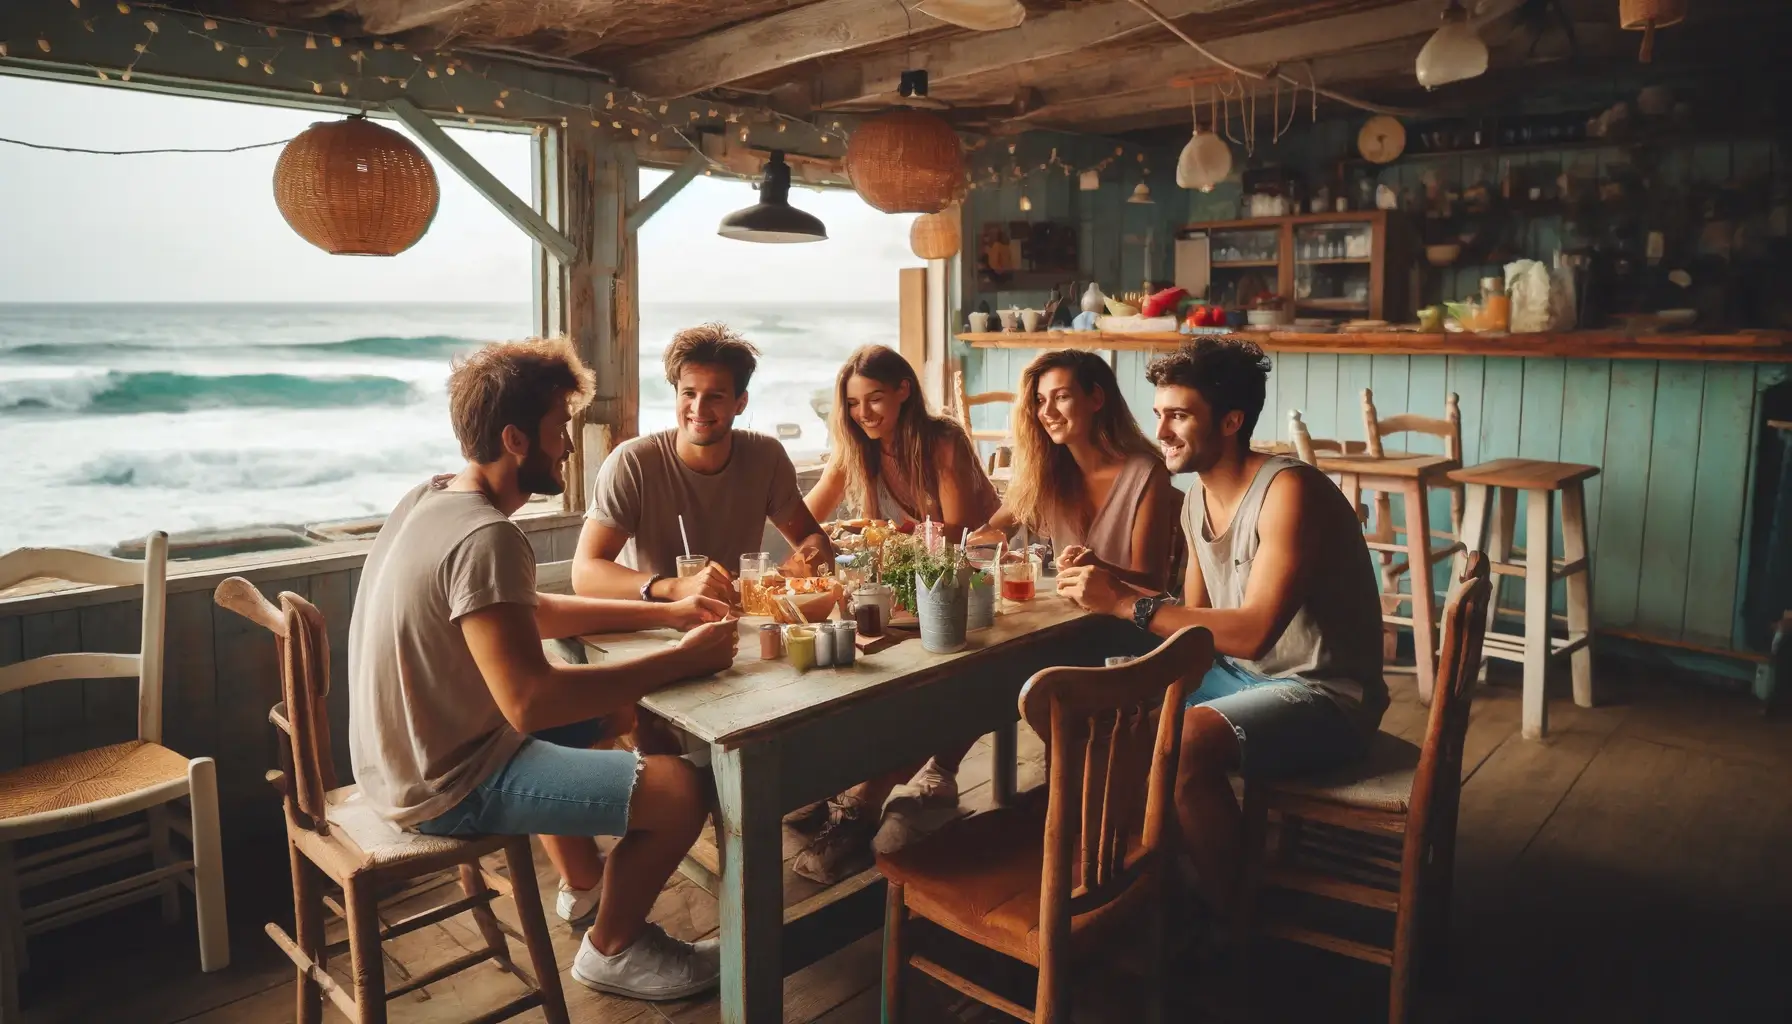 Изображение друзей, сидящих в бюджетной кафешке на берегу моря.